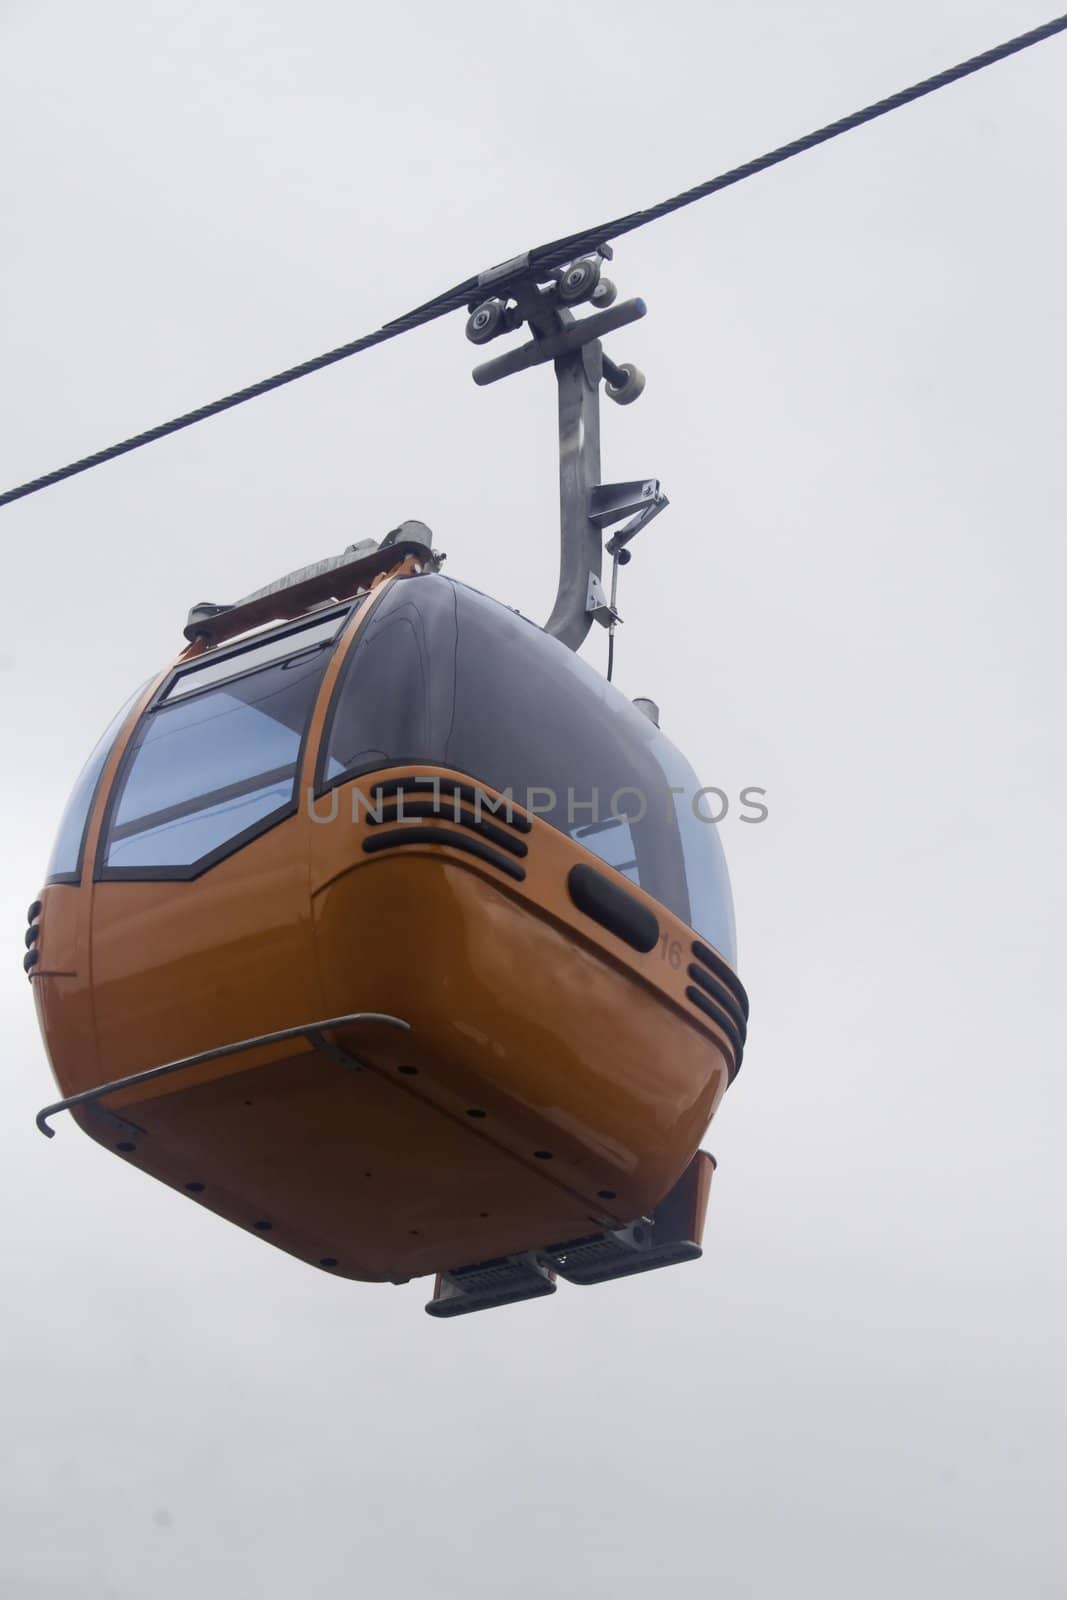 New  orange ski gondola isolated against overcast sky